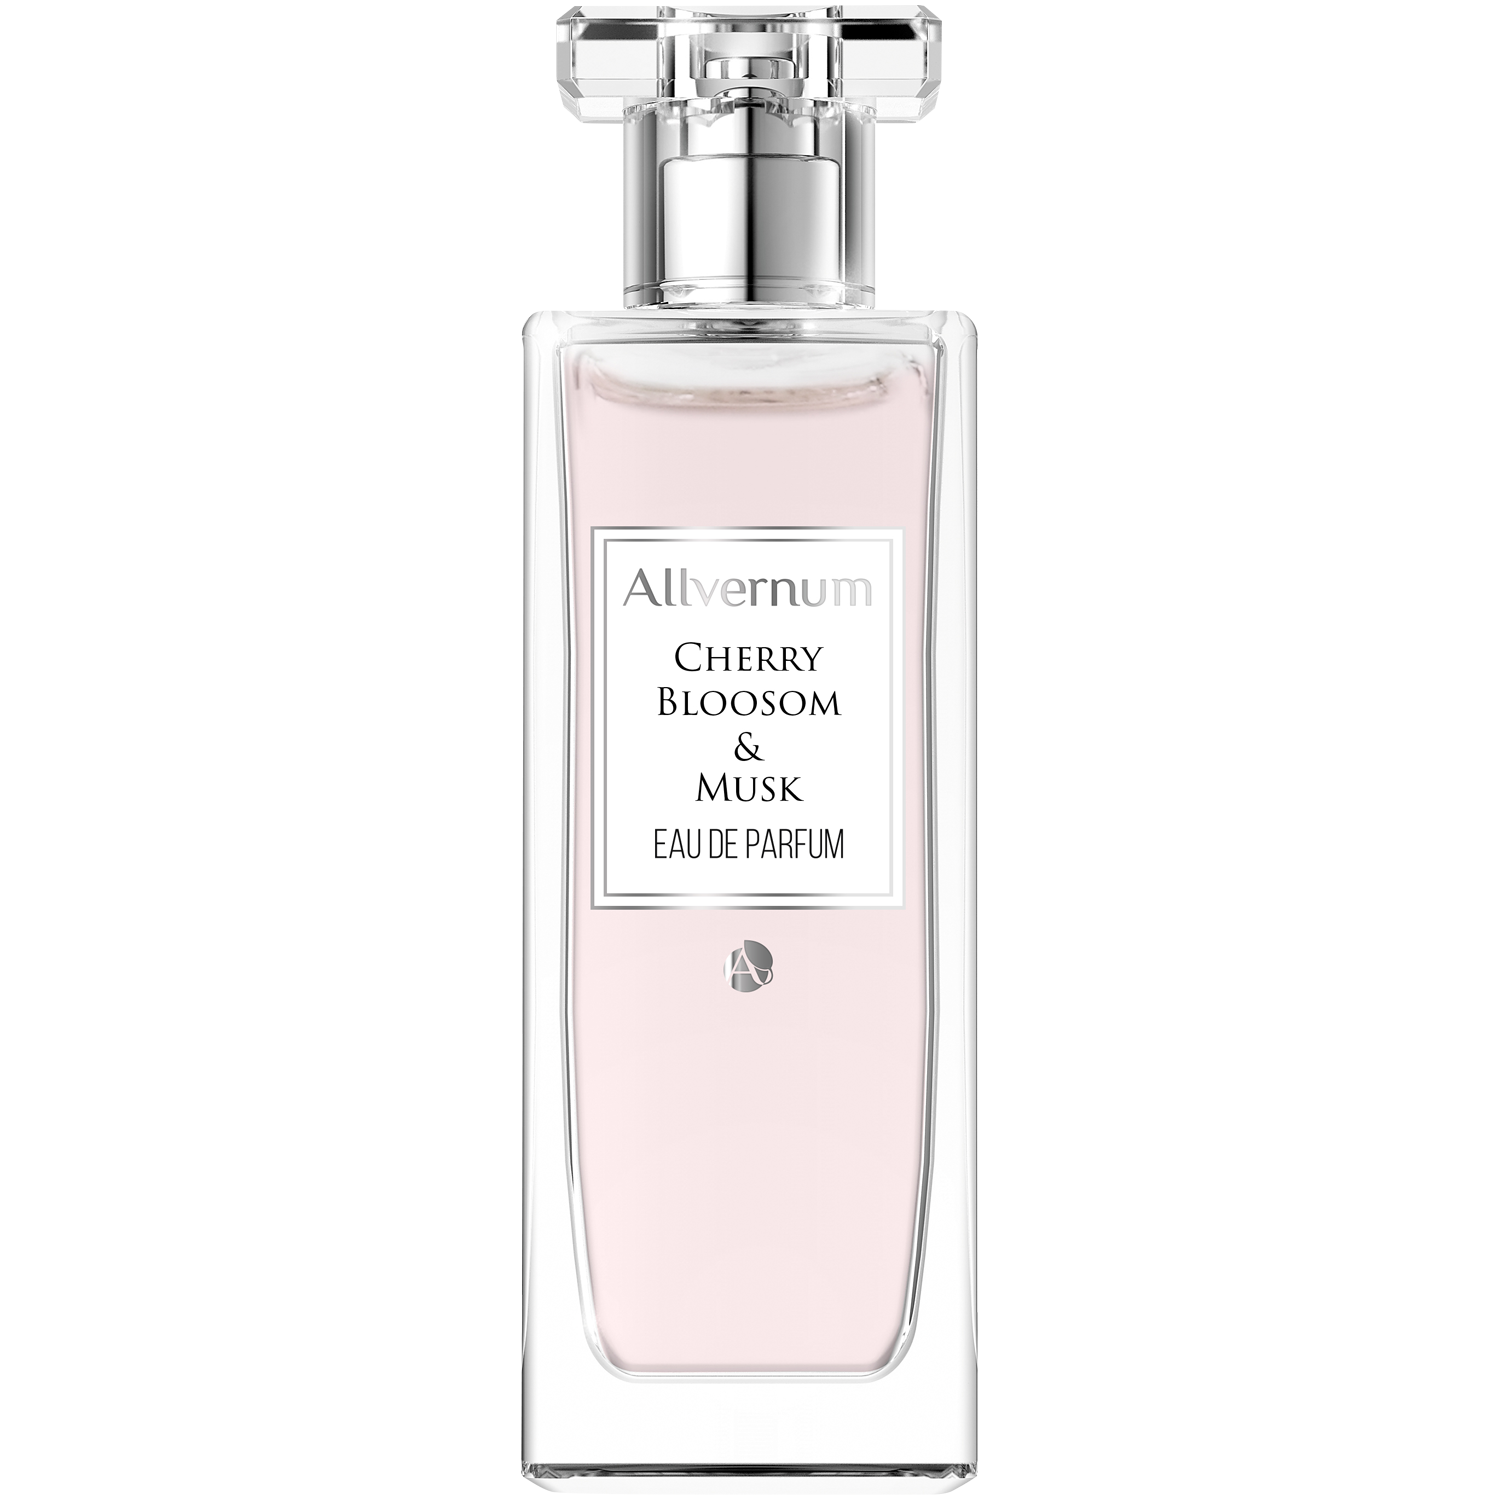 Allvernum Cherry Blossom & Musk парфюмерная вода для женщин, 50 мл парфюмерный набор allvernum cherry blossom